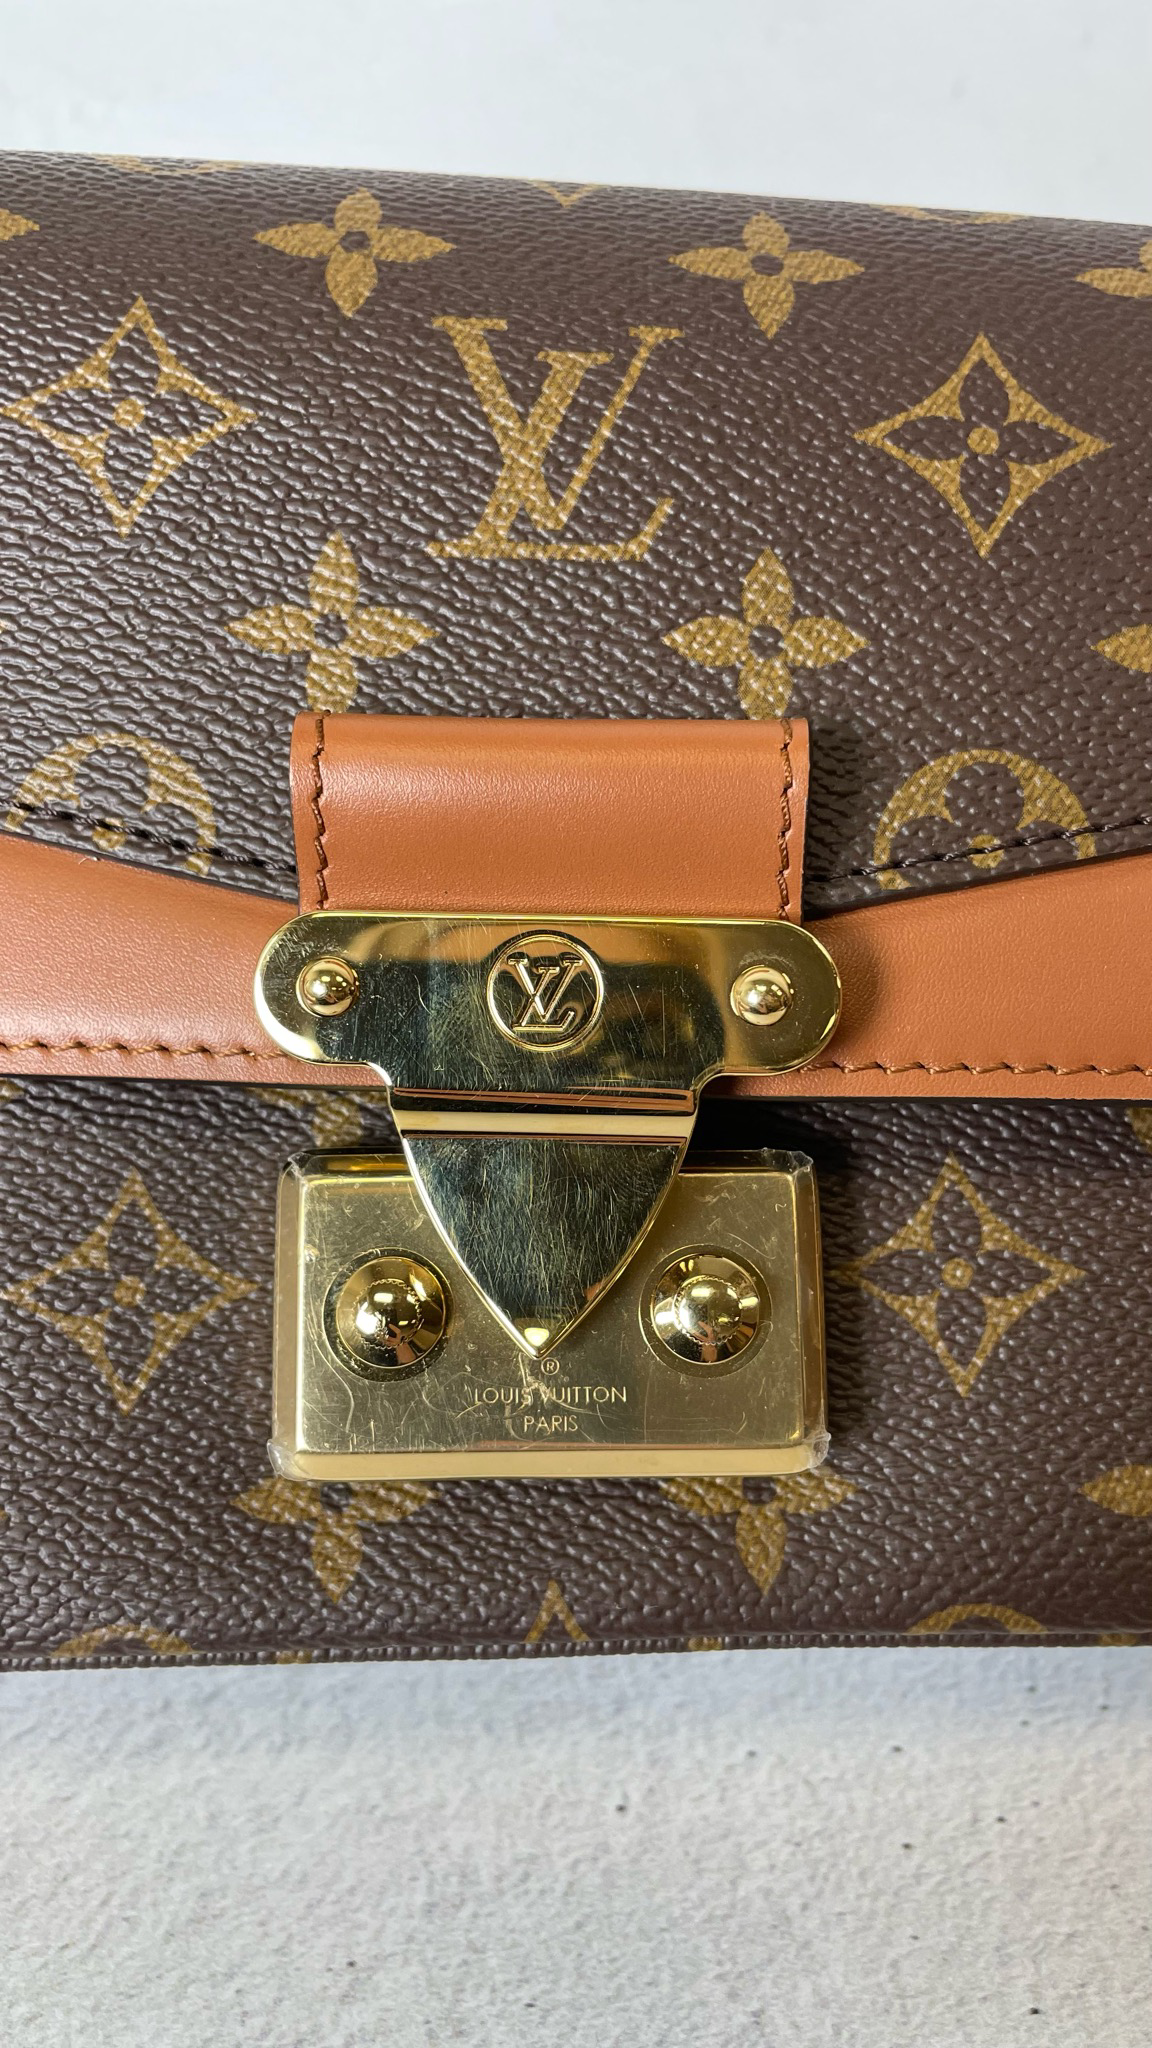 Сумка Louis Vuitton Marceau Bag Monogram Empreinte Creme купить в  интернет-магазине